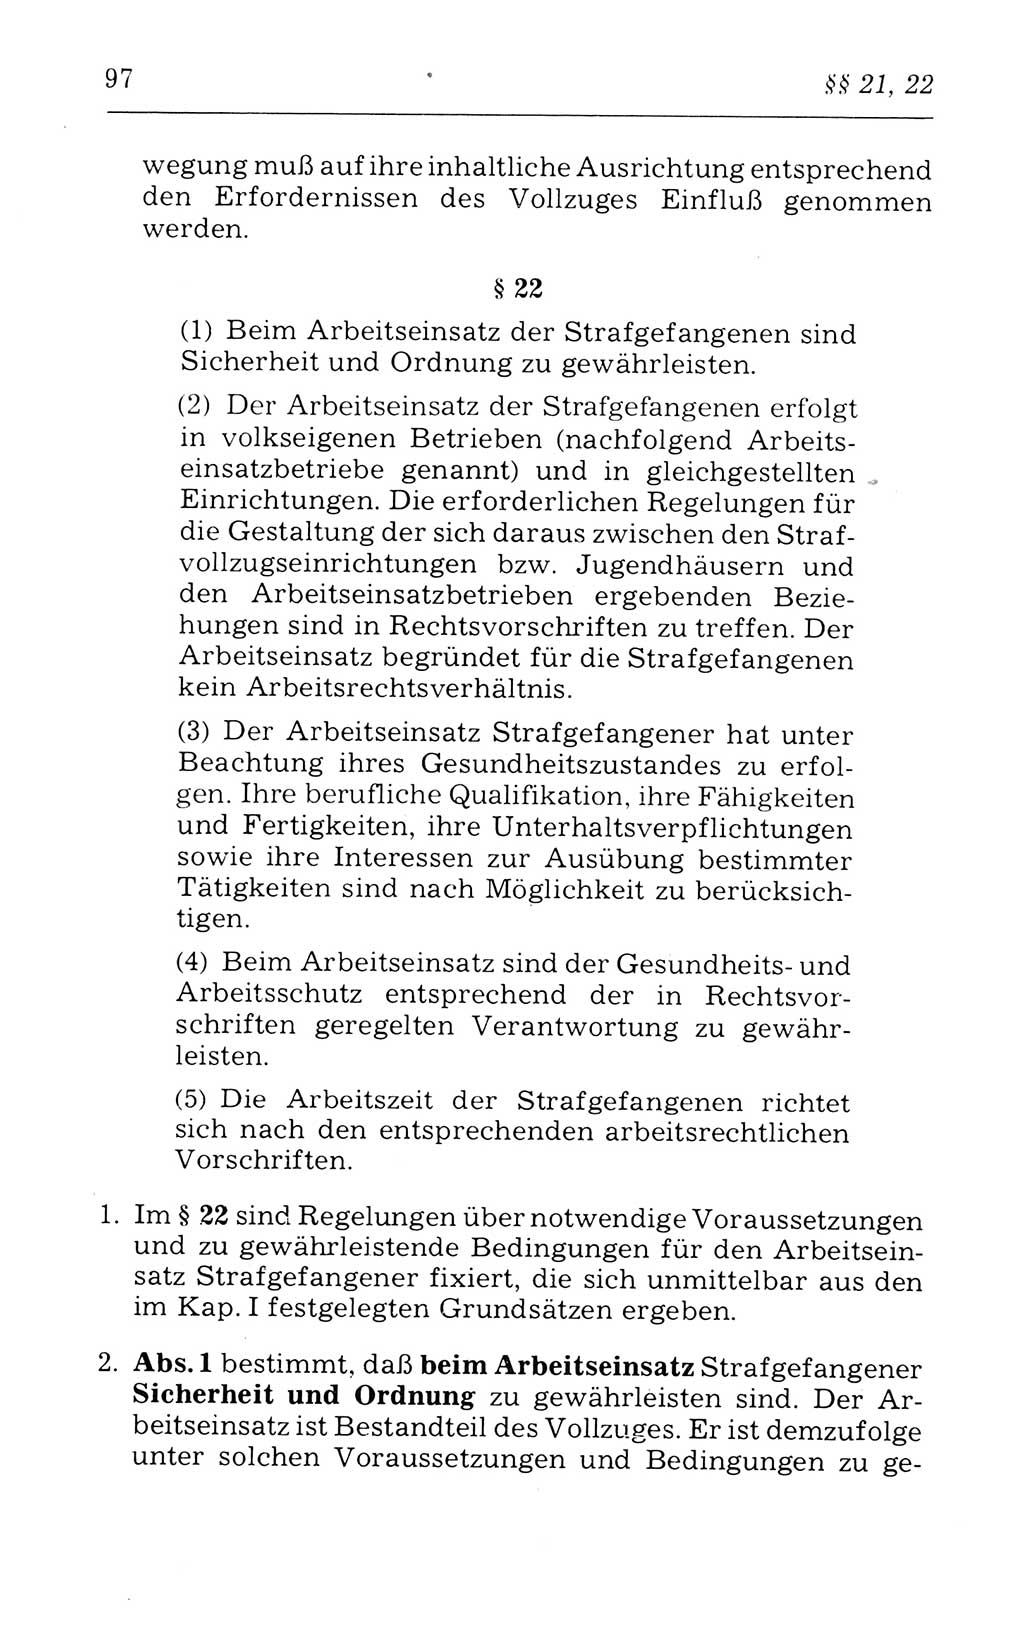 Kommentar zum Strafvollzugsgesetz [(StVG) Deutsche Demokratische Republik (DDR)] 1980, Seite 97 (Komm. StVG DDR 1980, S. 97)